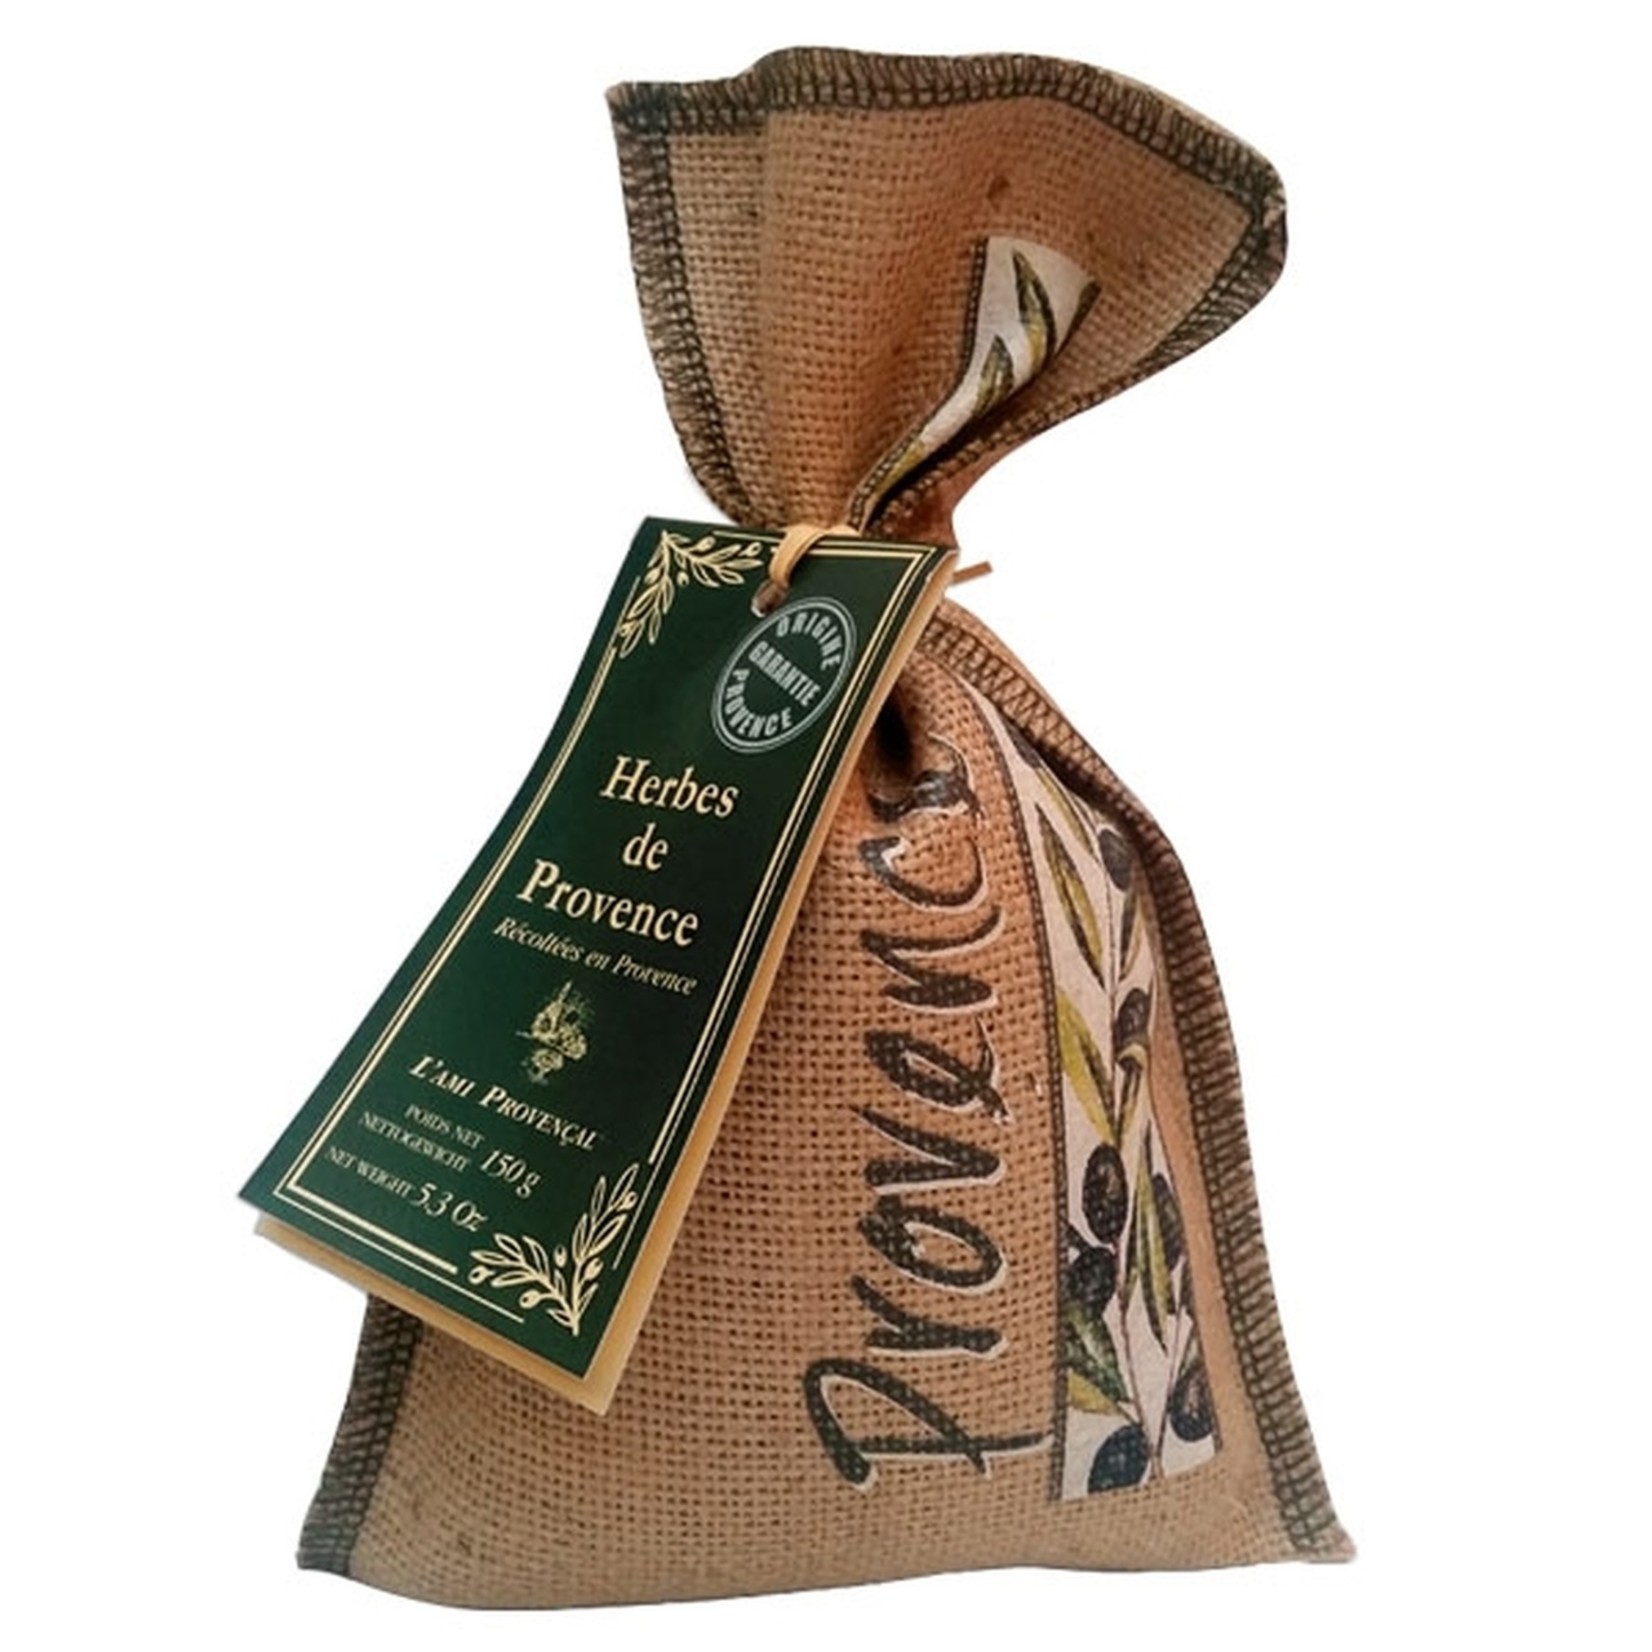 L'Ami Provencal Provence Herbs in Burlap Bag